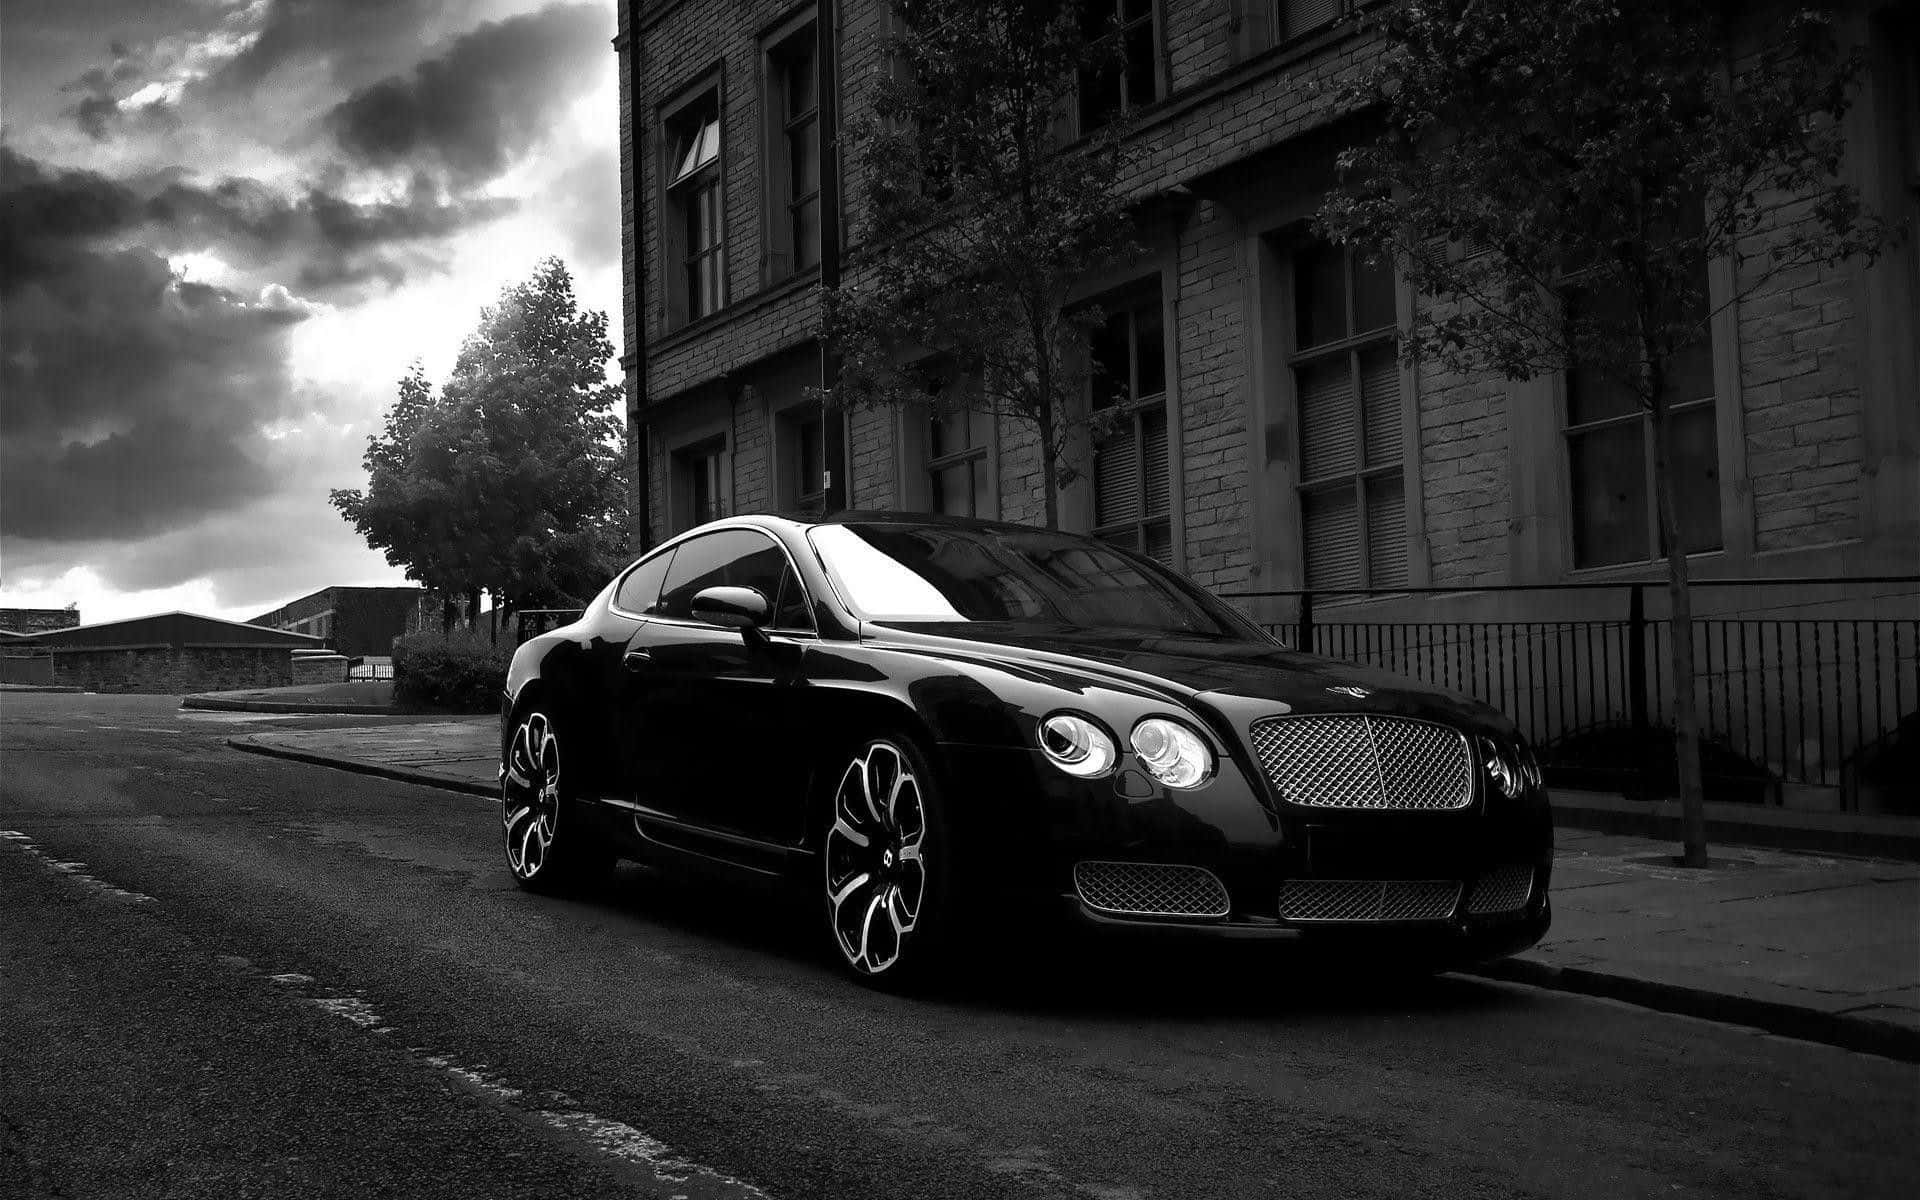 The Best of Luxury: Bentley